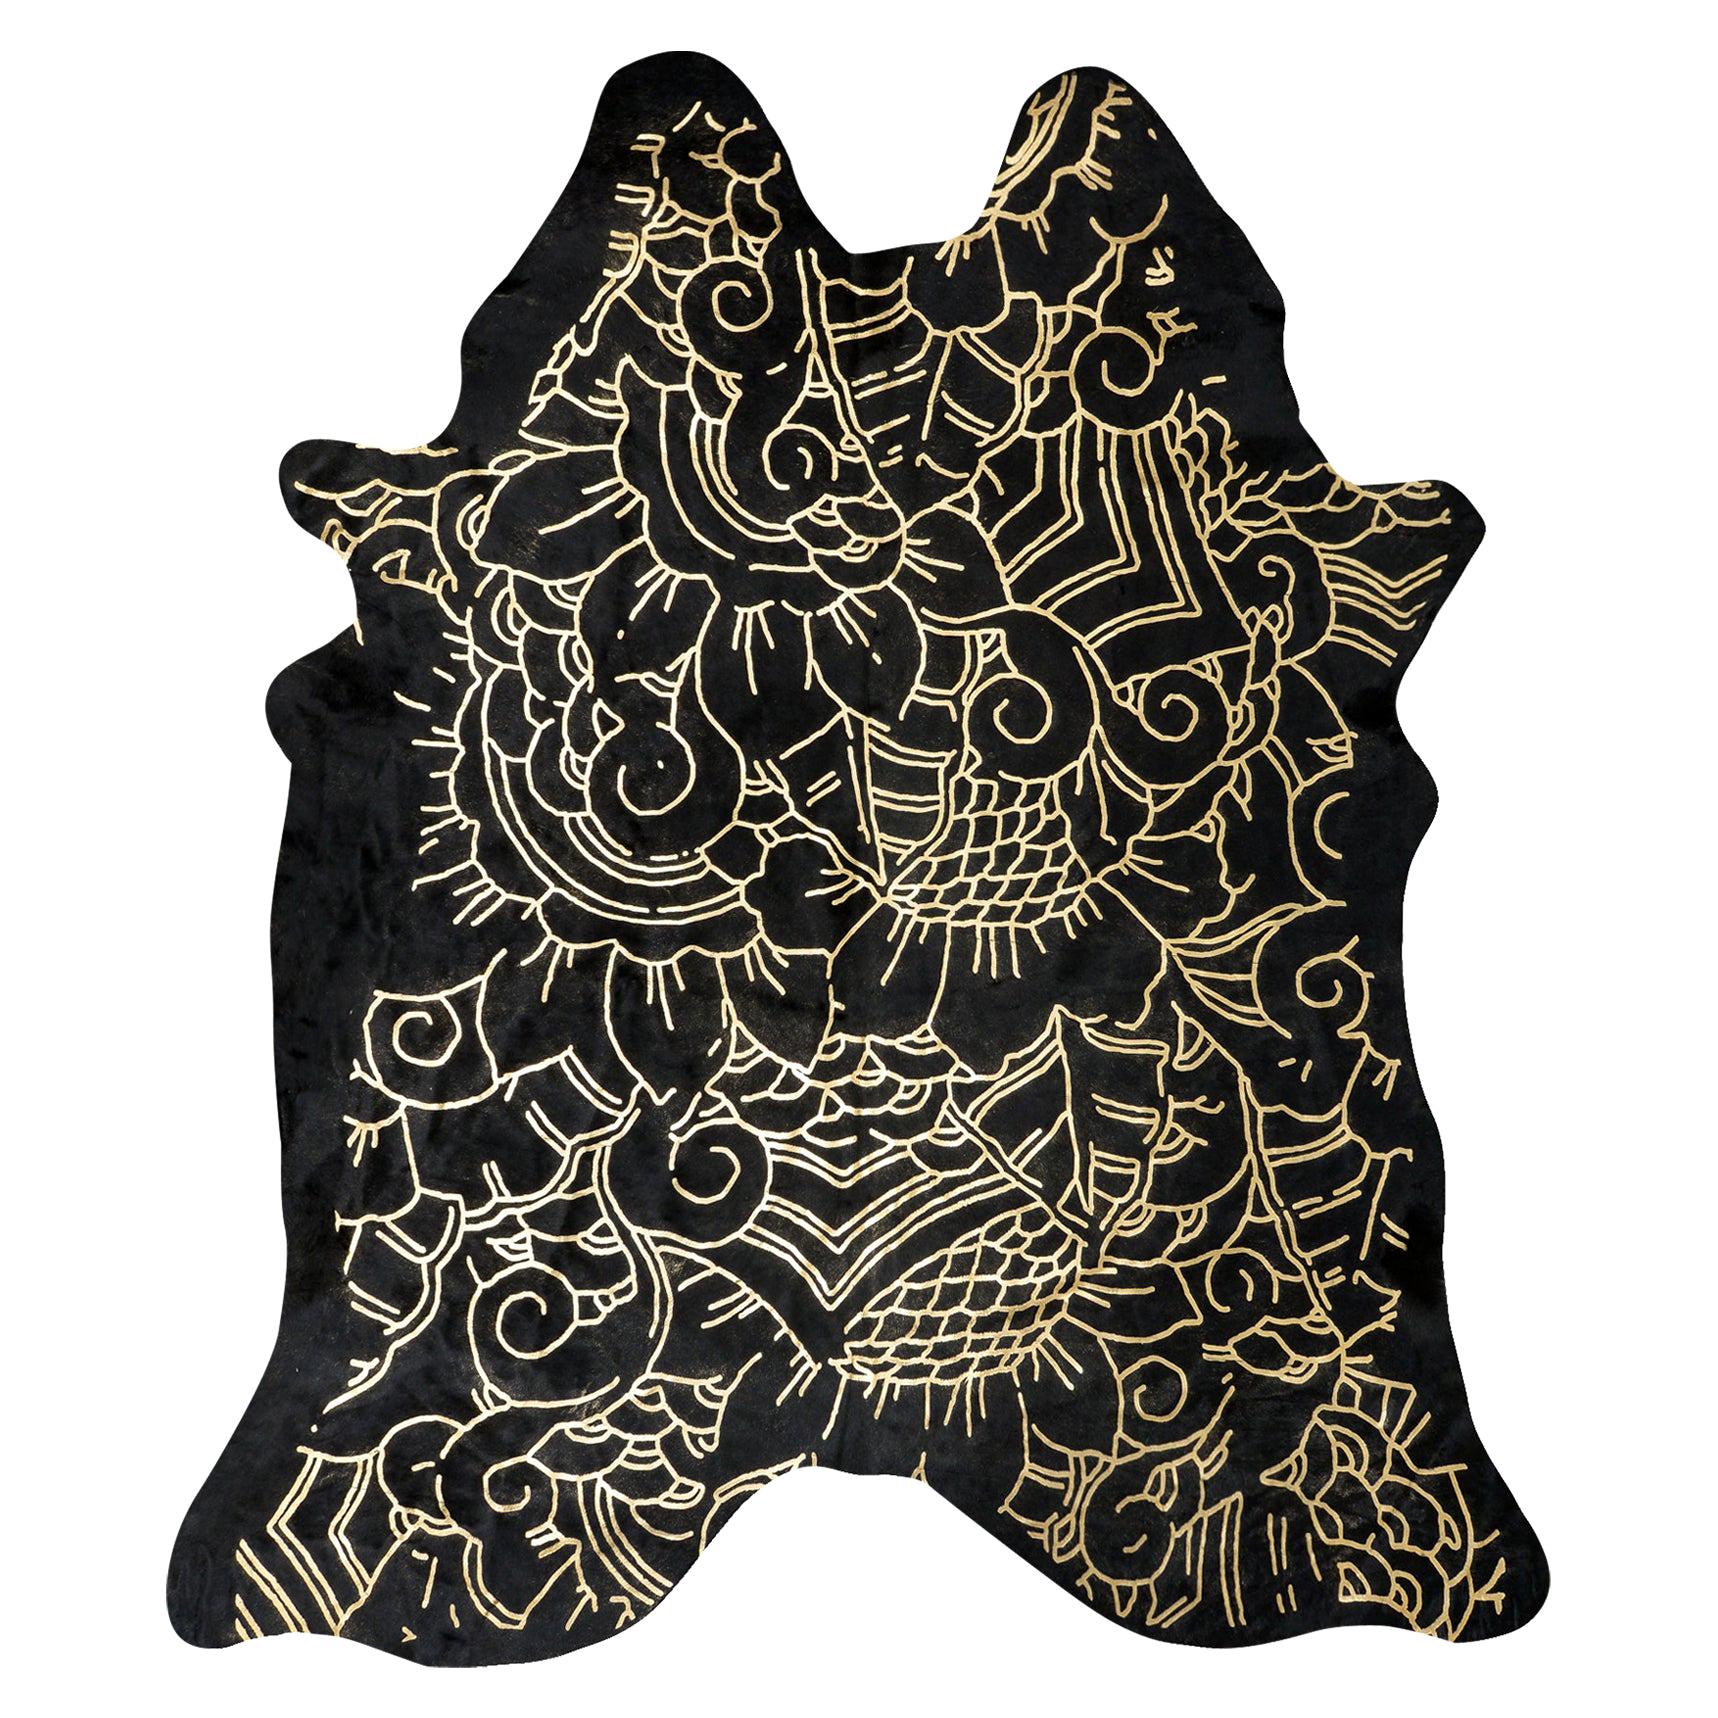 Gold Metallic Boho Batik Pattern Black Cowhide Rug, Large